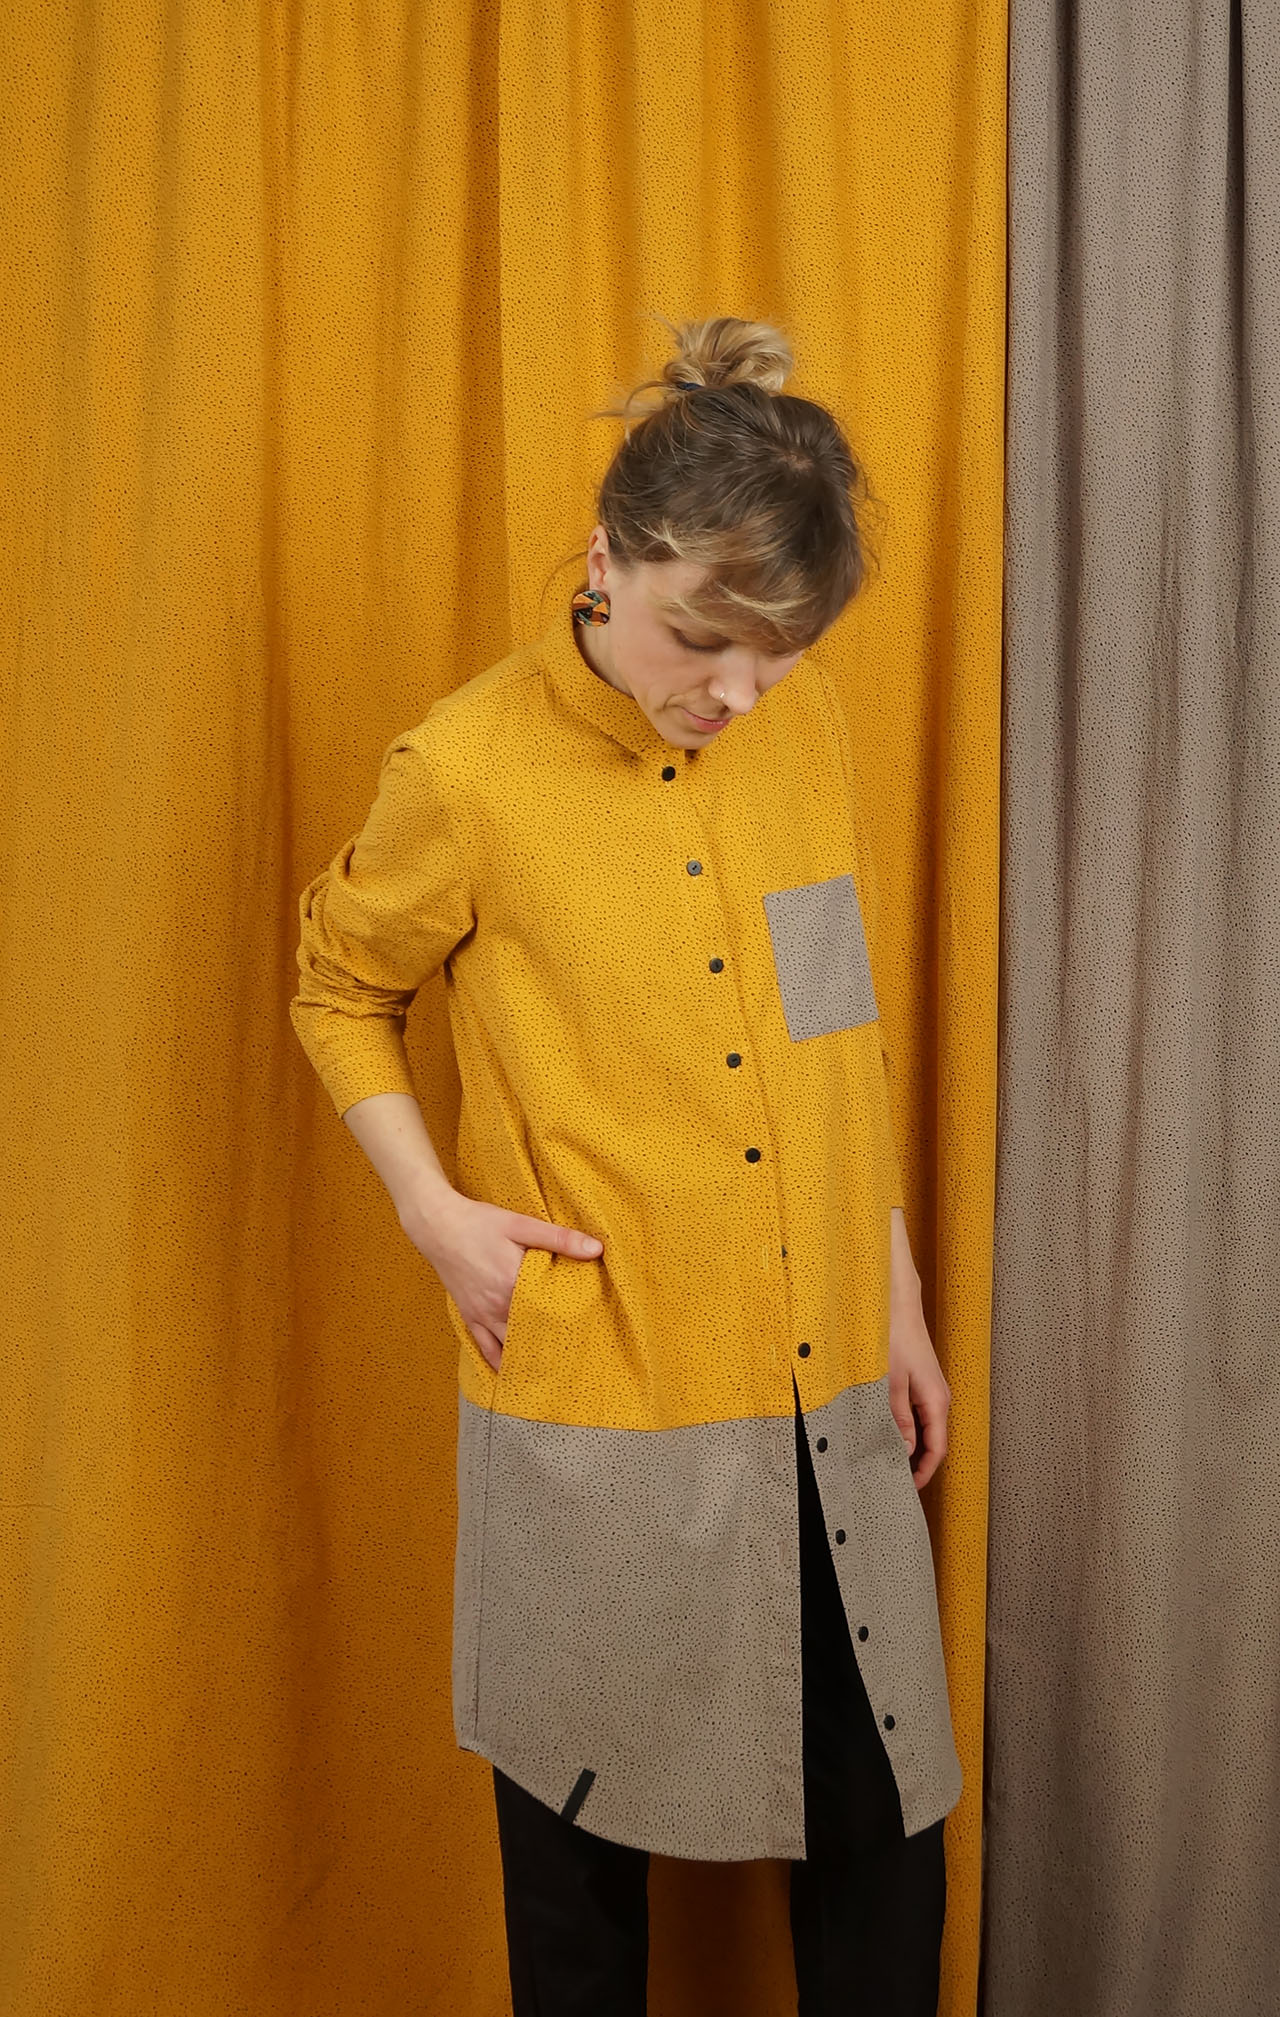 Tunika SŁOŃCE- METR64 - Bawełniana, damska, żółto szara koszula / tunika / sukienka z delikatnym czarnym wzorem w małe czarne plamki.